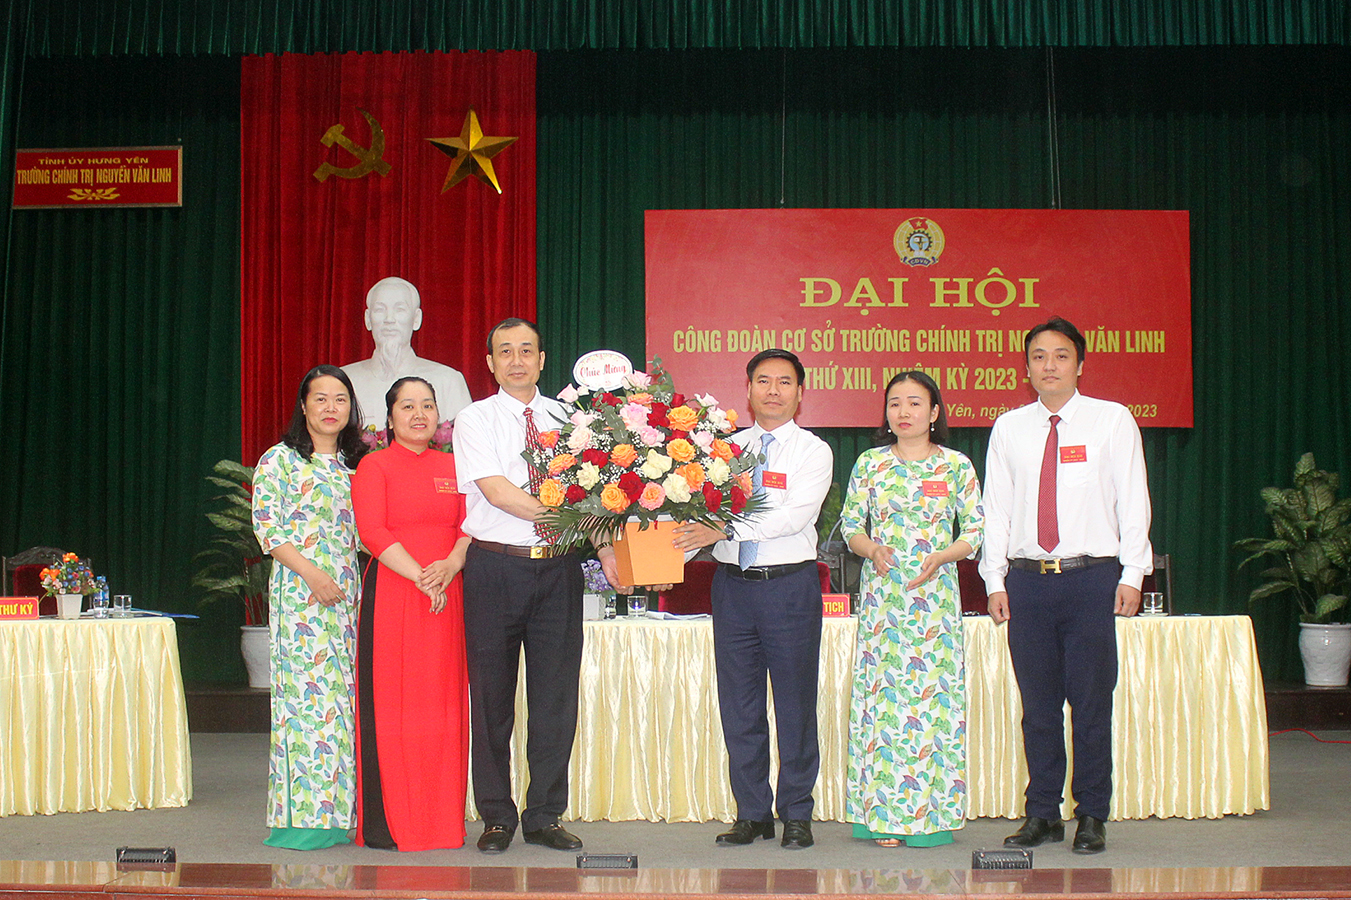 Đại hội Công đoàn cơ sở Trường Chính trị Nguyễn Văn Linh lần thứ XIII, nhiệm kỳ 2023-2028